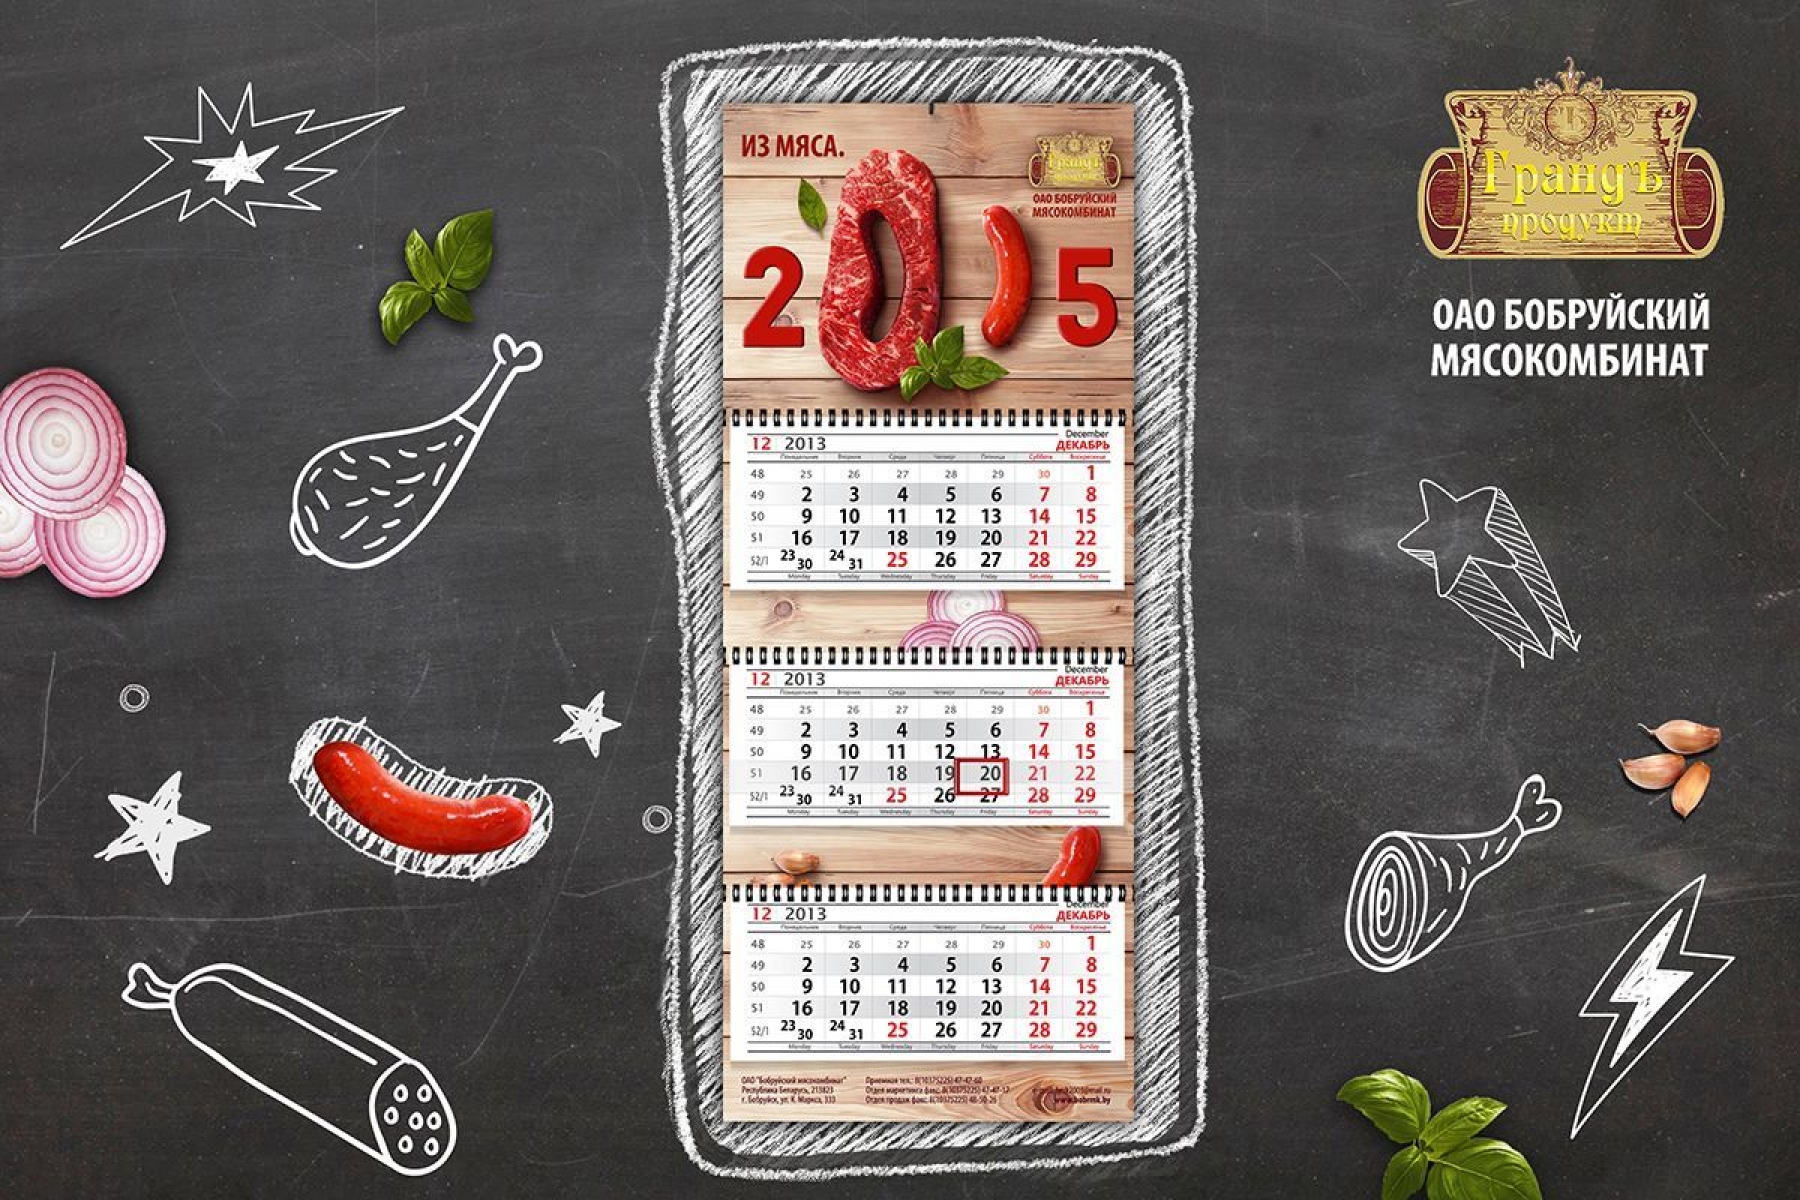 Дизайн-концепция календаря настенного на 2015 г. для "Бобруйского мясокомбината"